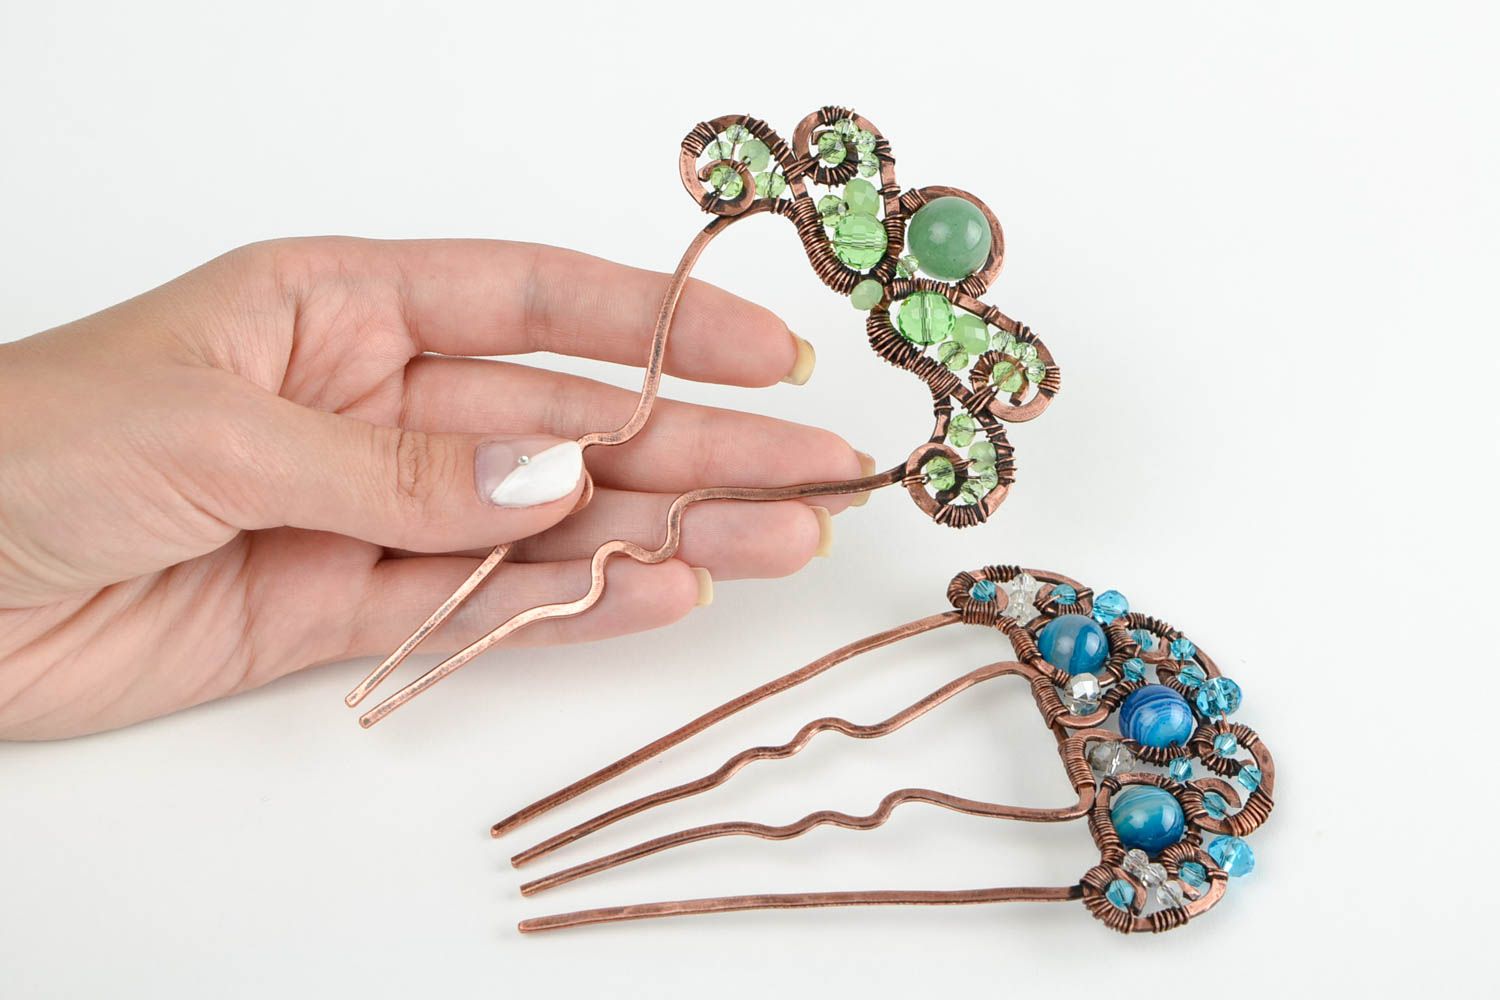 Handmade 2 Haarspangen mit Perlen blau grün Kupfer Schmuck Accessoires für Haare foto 2